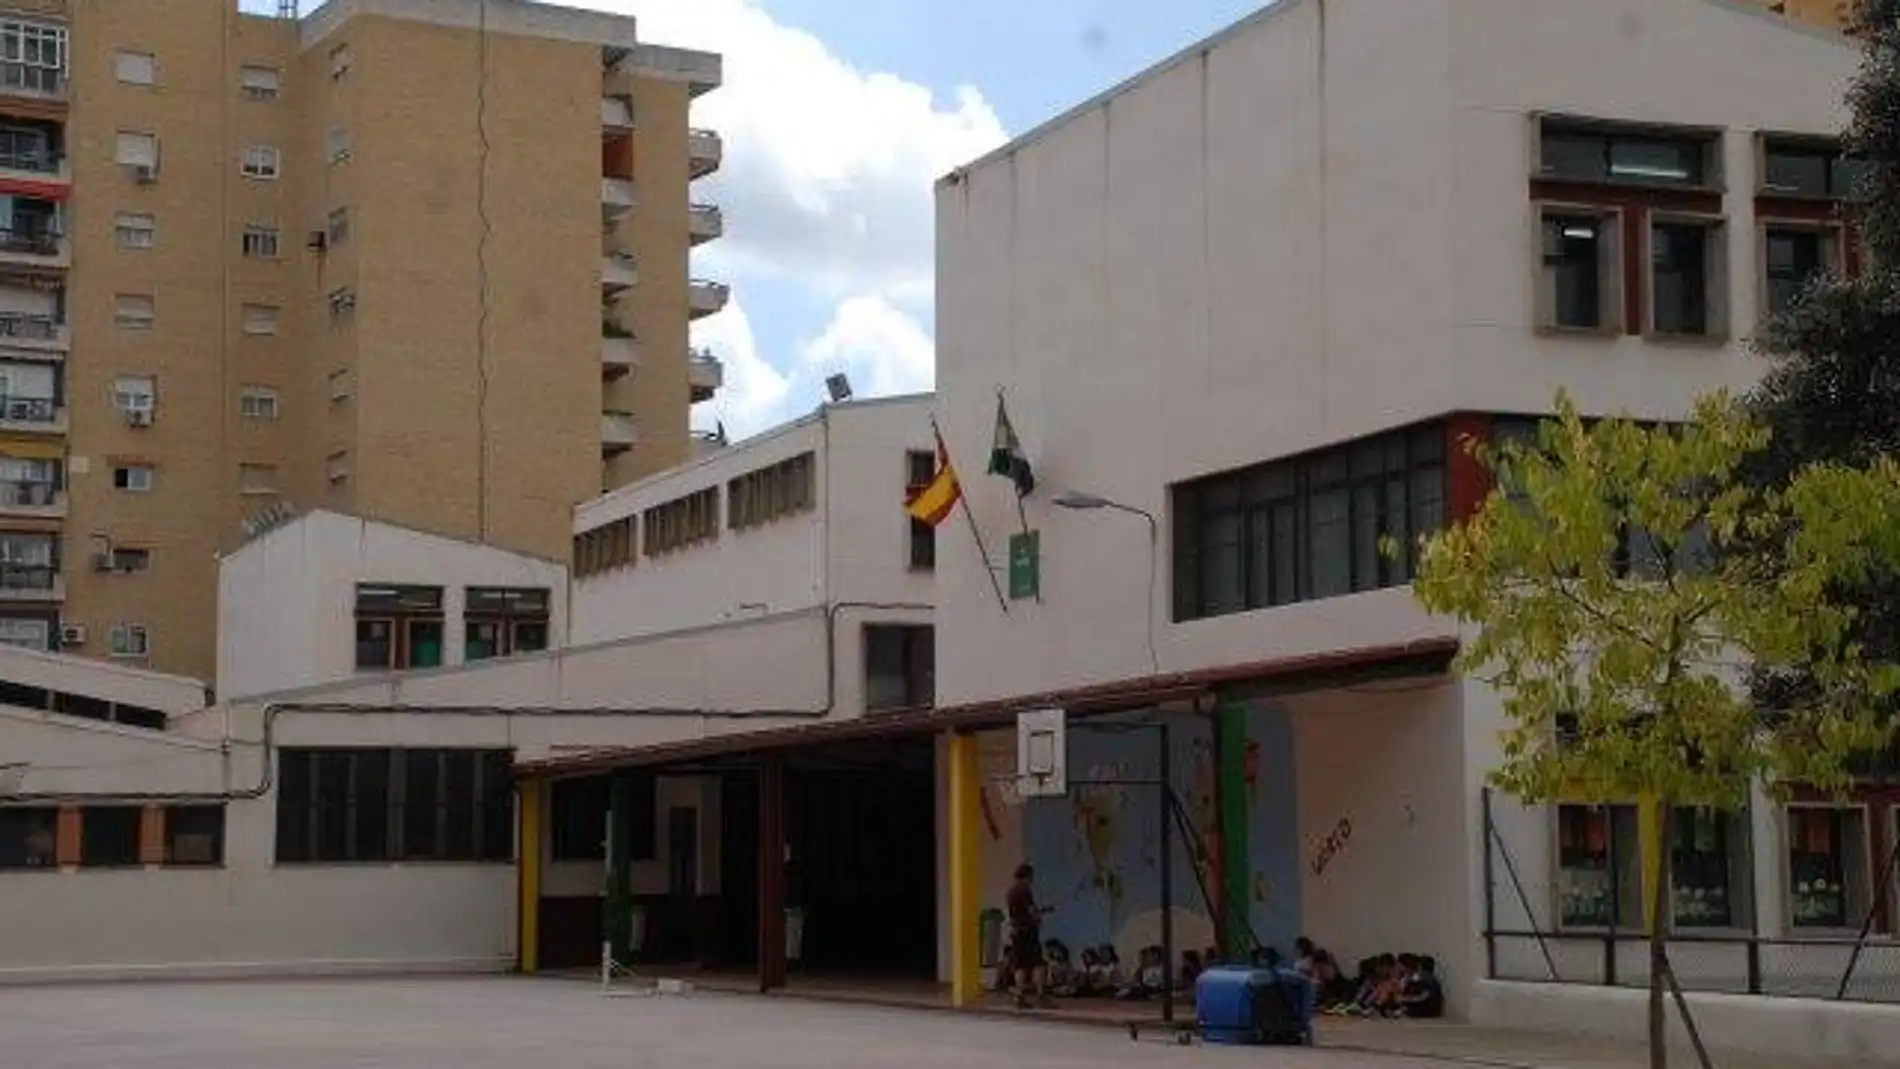 Se investiga si algunos alumnos del colegio Luis de Morales han podido sufrir una intoxicación alimentaria en el comedor del centro